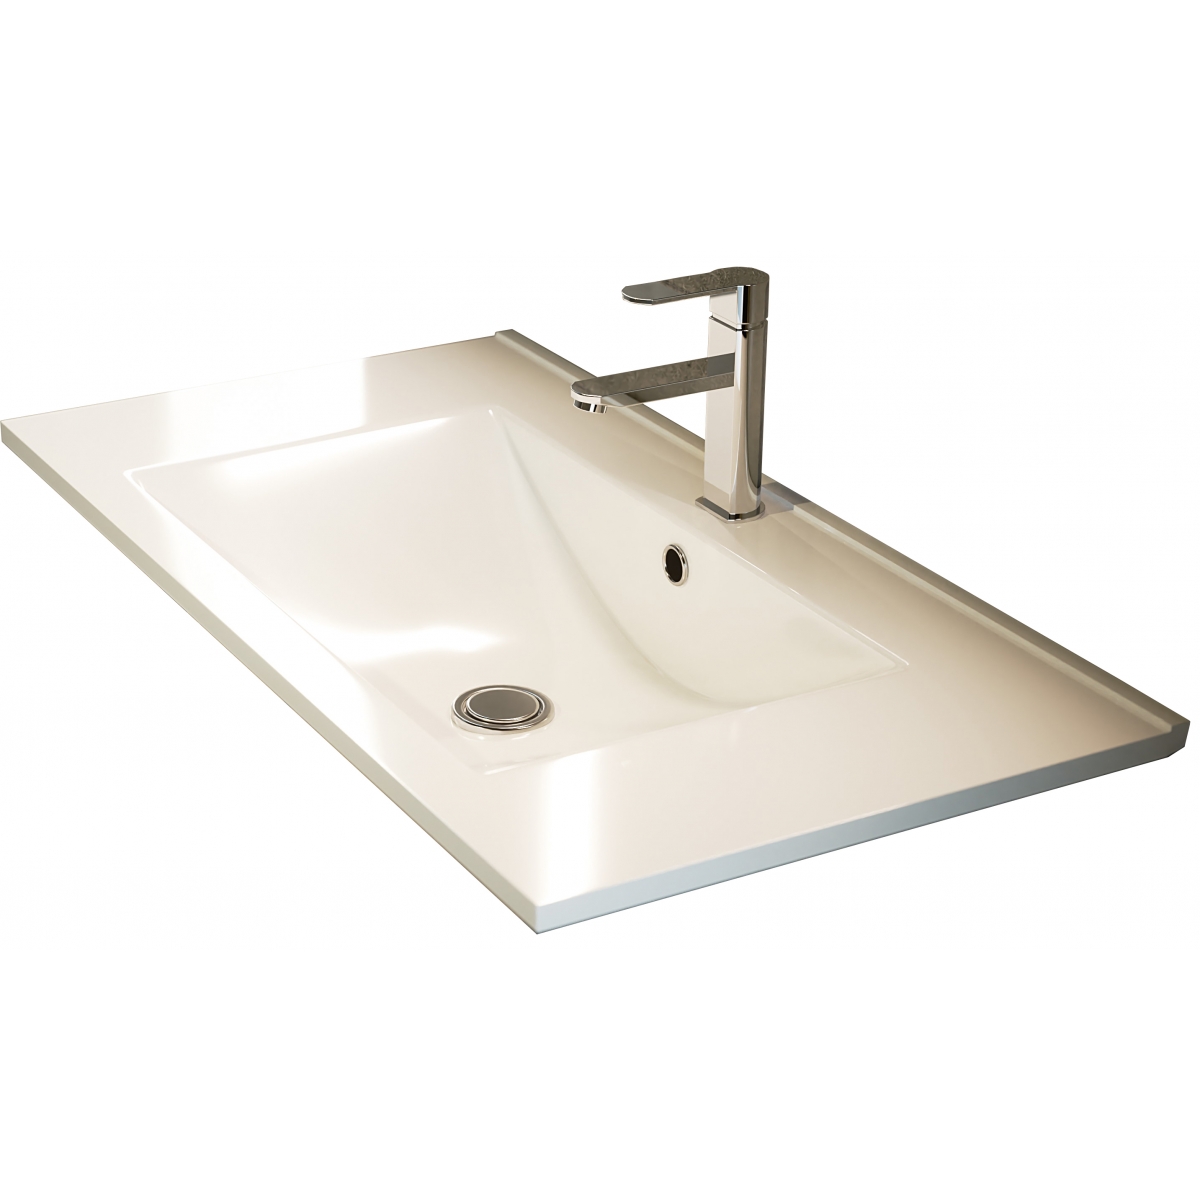 Fotos ambiente de Mueble de baño suspendido Dover de 80 cm de ancho color Hiberian con lavabo integrado [55054]